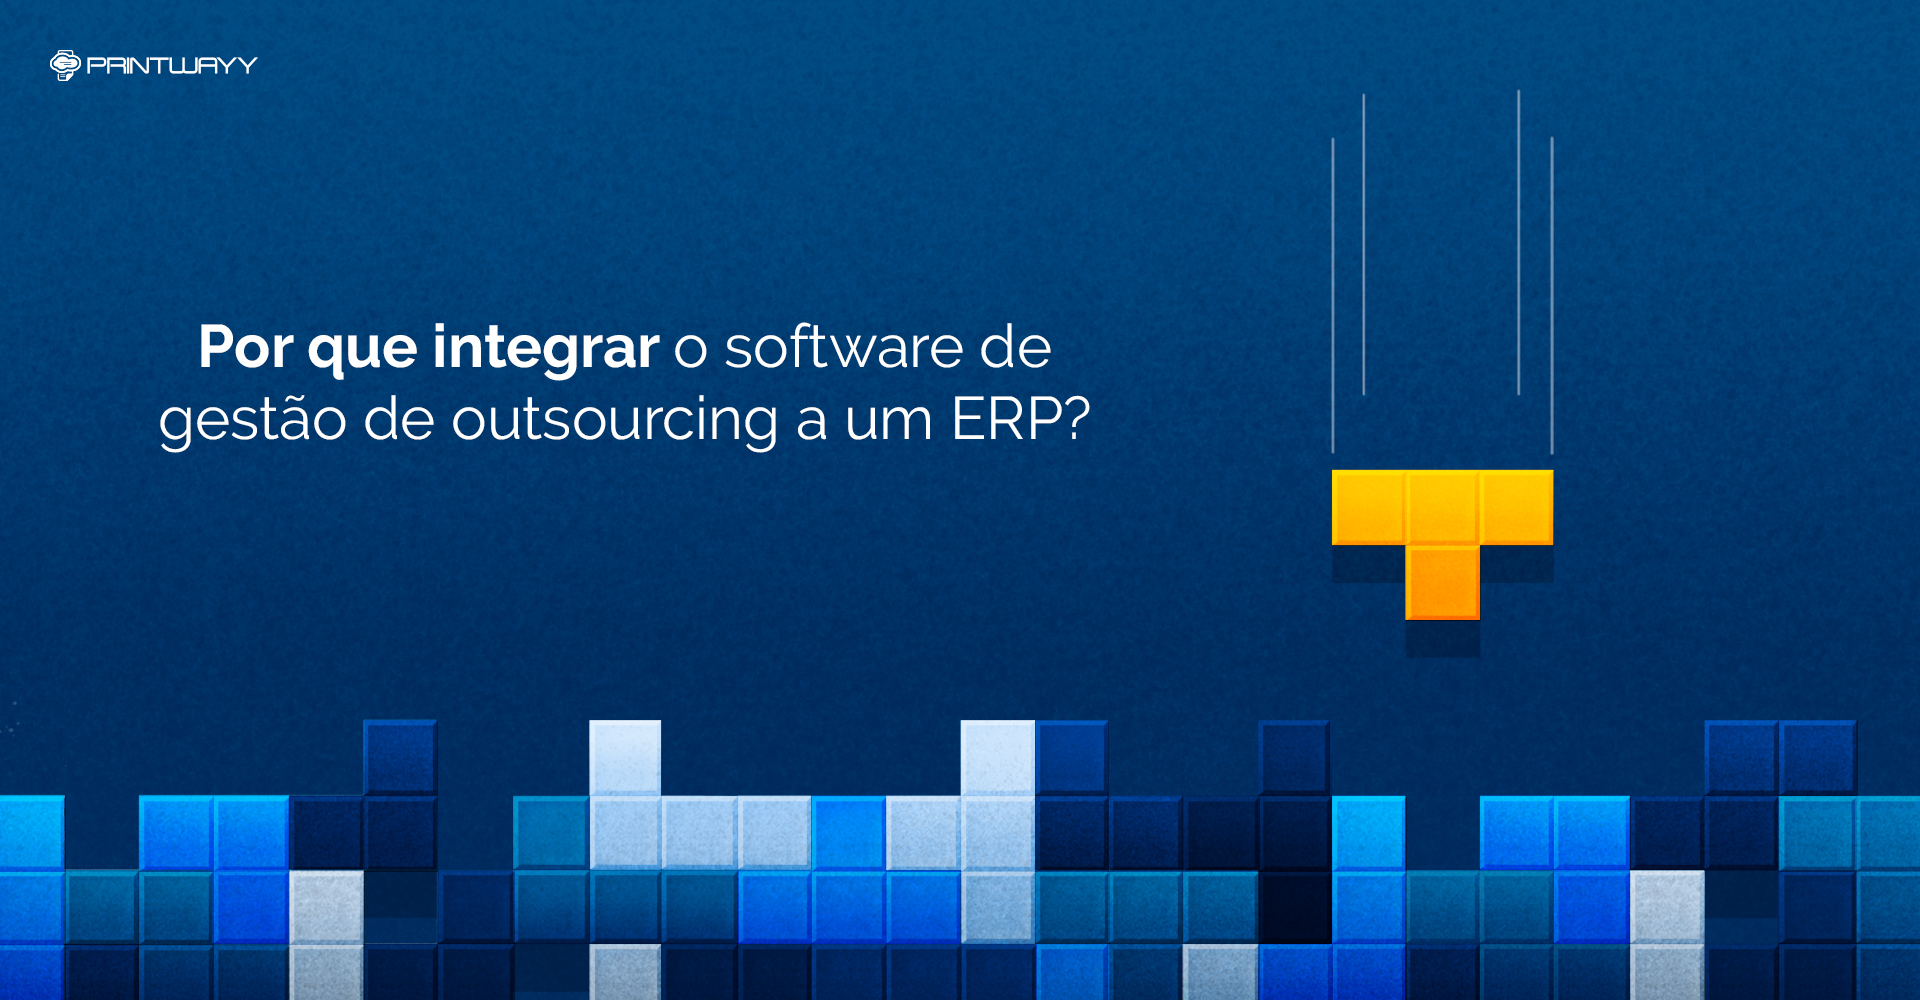 Por que integrar o software de gestão de outsourcing a um ERP?